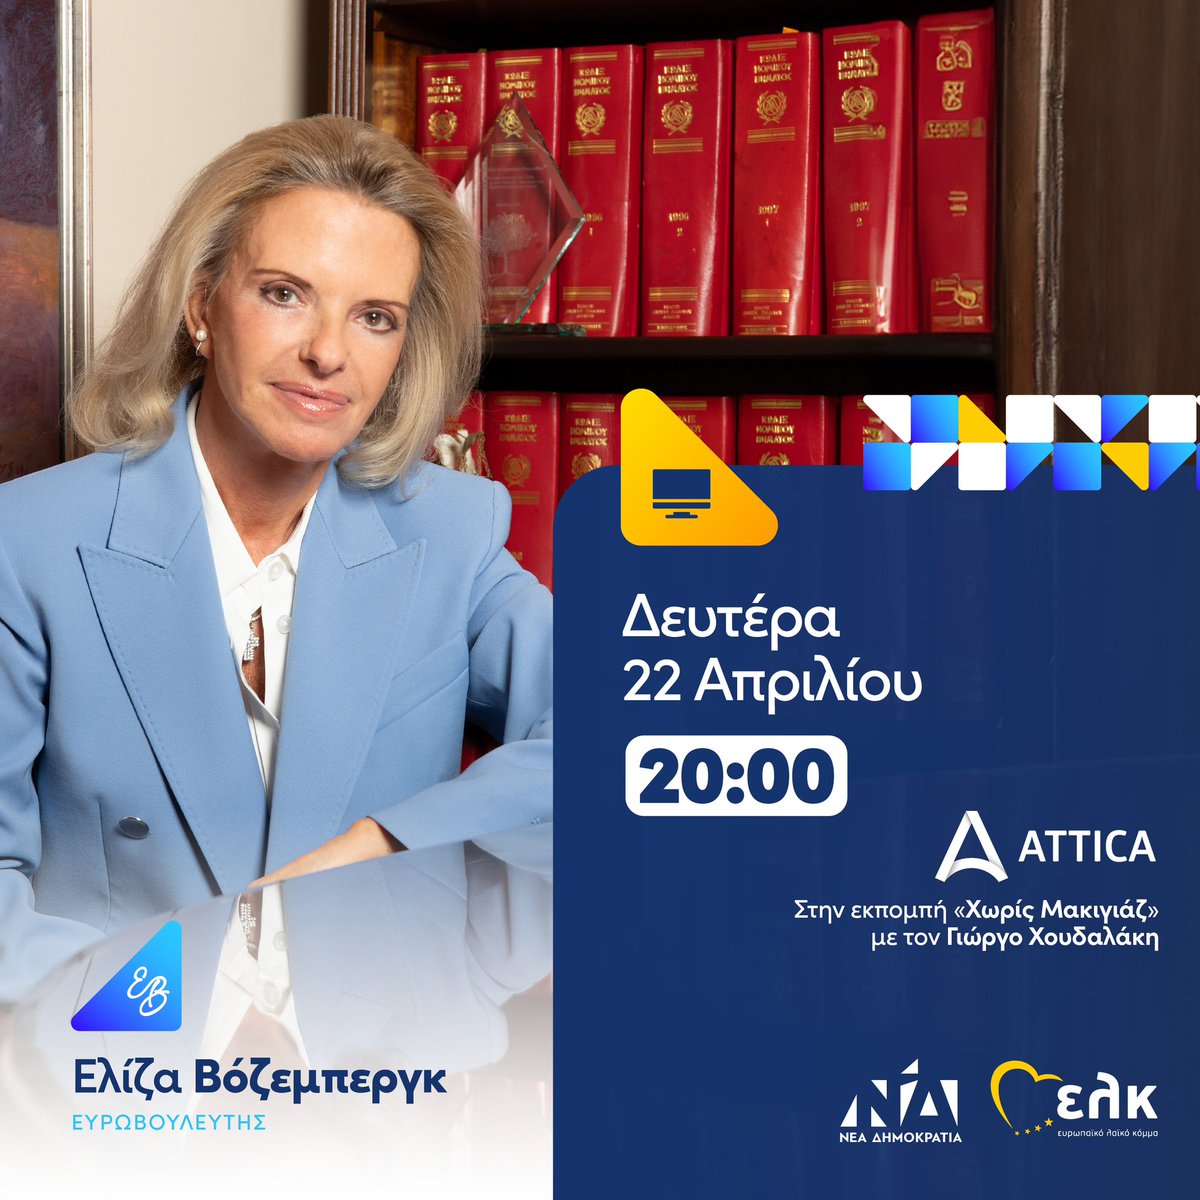 📺 Σήμερα στις 8:00 το βράδυ στην εκπομπή «Χωρίς Μακιγιάζ» του @AtticaTV_gr . #Vozemberg #ND #EPP #EK #ΠαντούΣτηνΕλλάδα